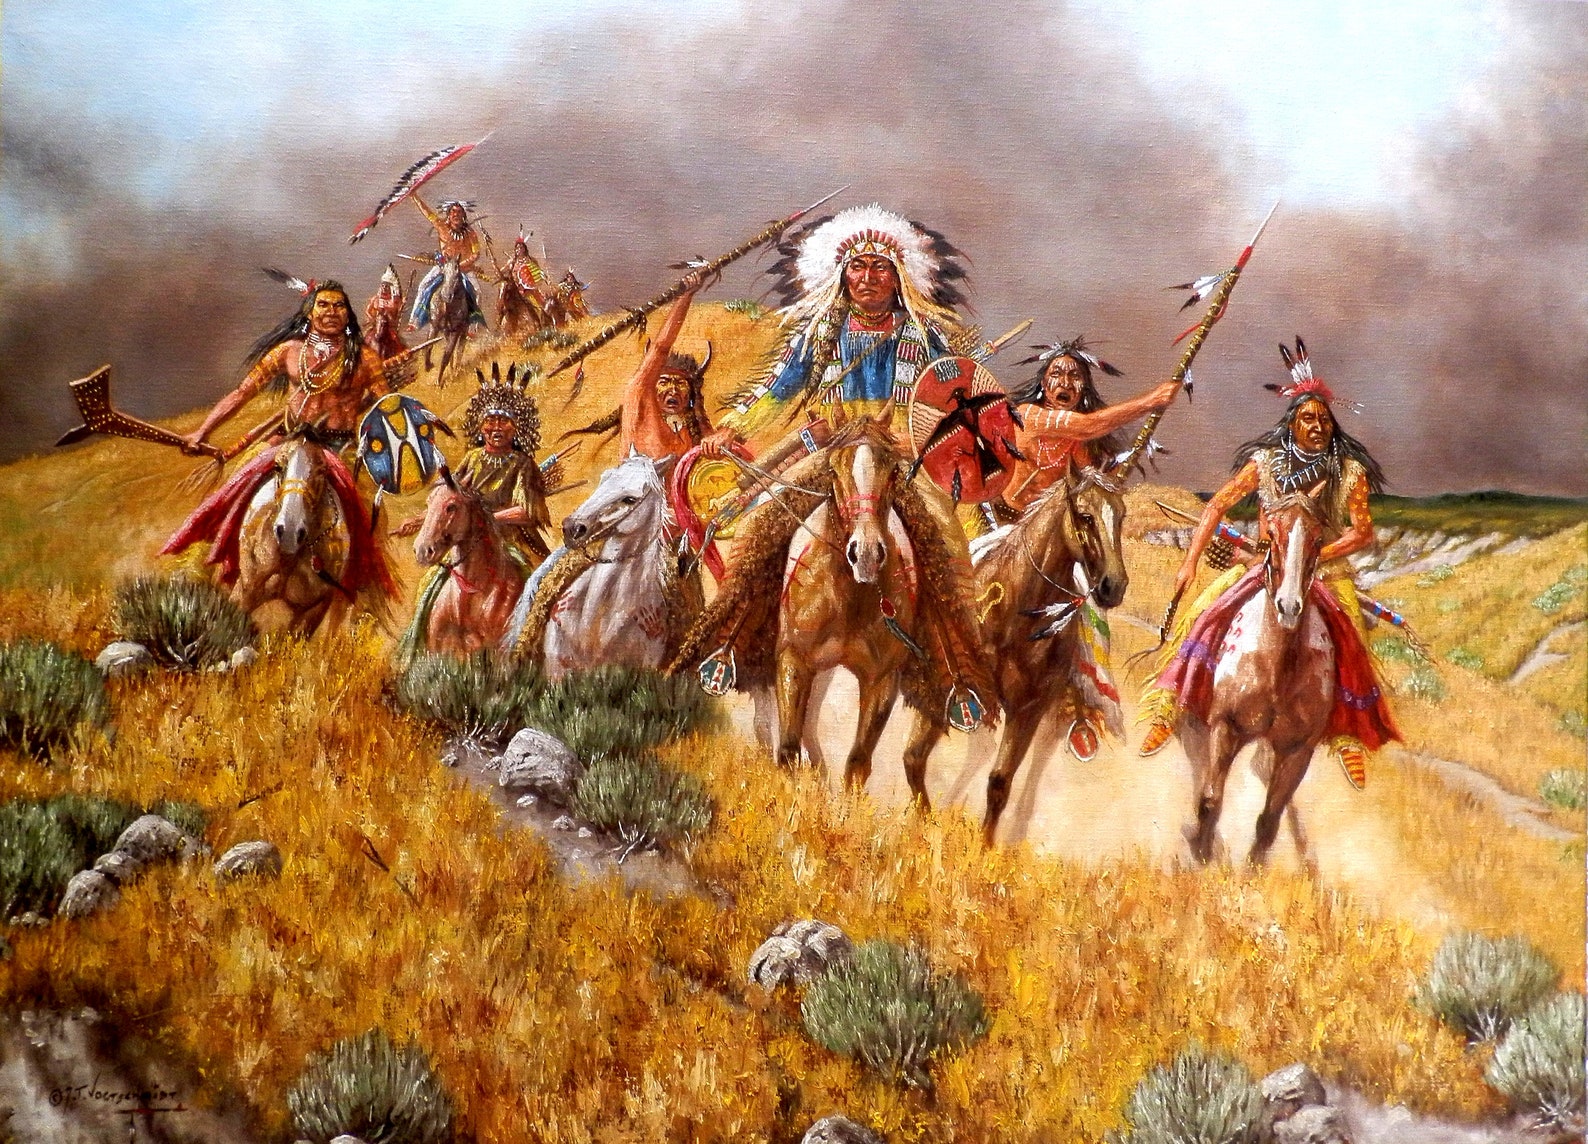 Ф индейцев. Индейцы Апачи войны арт. Индейцы Северной Америки Апачи. Индейцы Апачи вожди. Индейцы Апачи войны арт фэнтези.